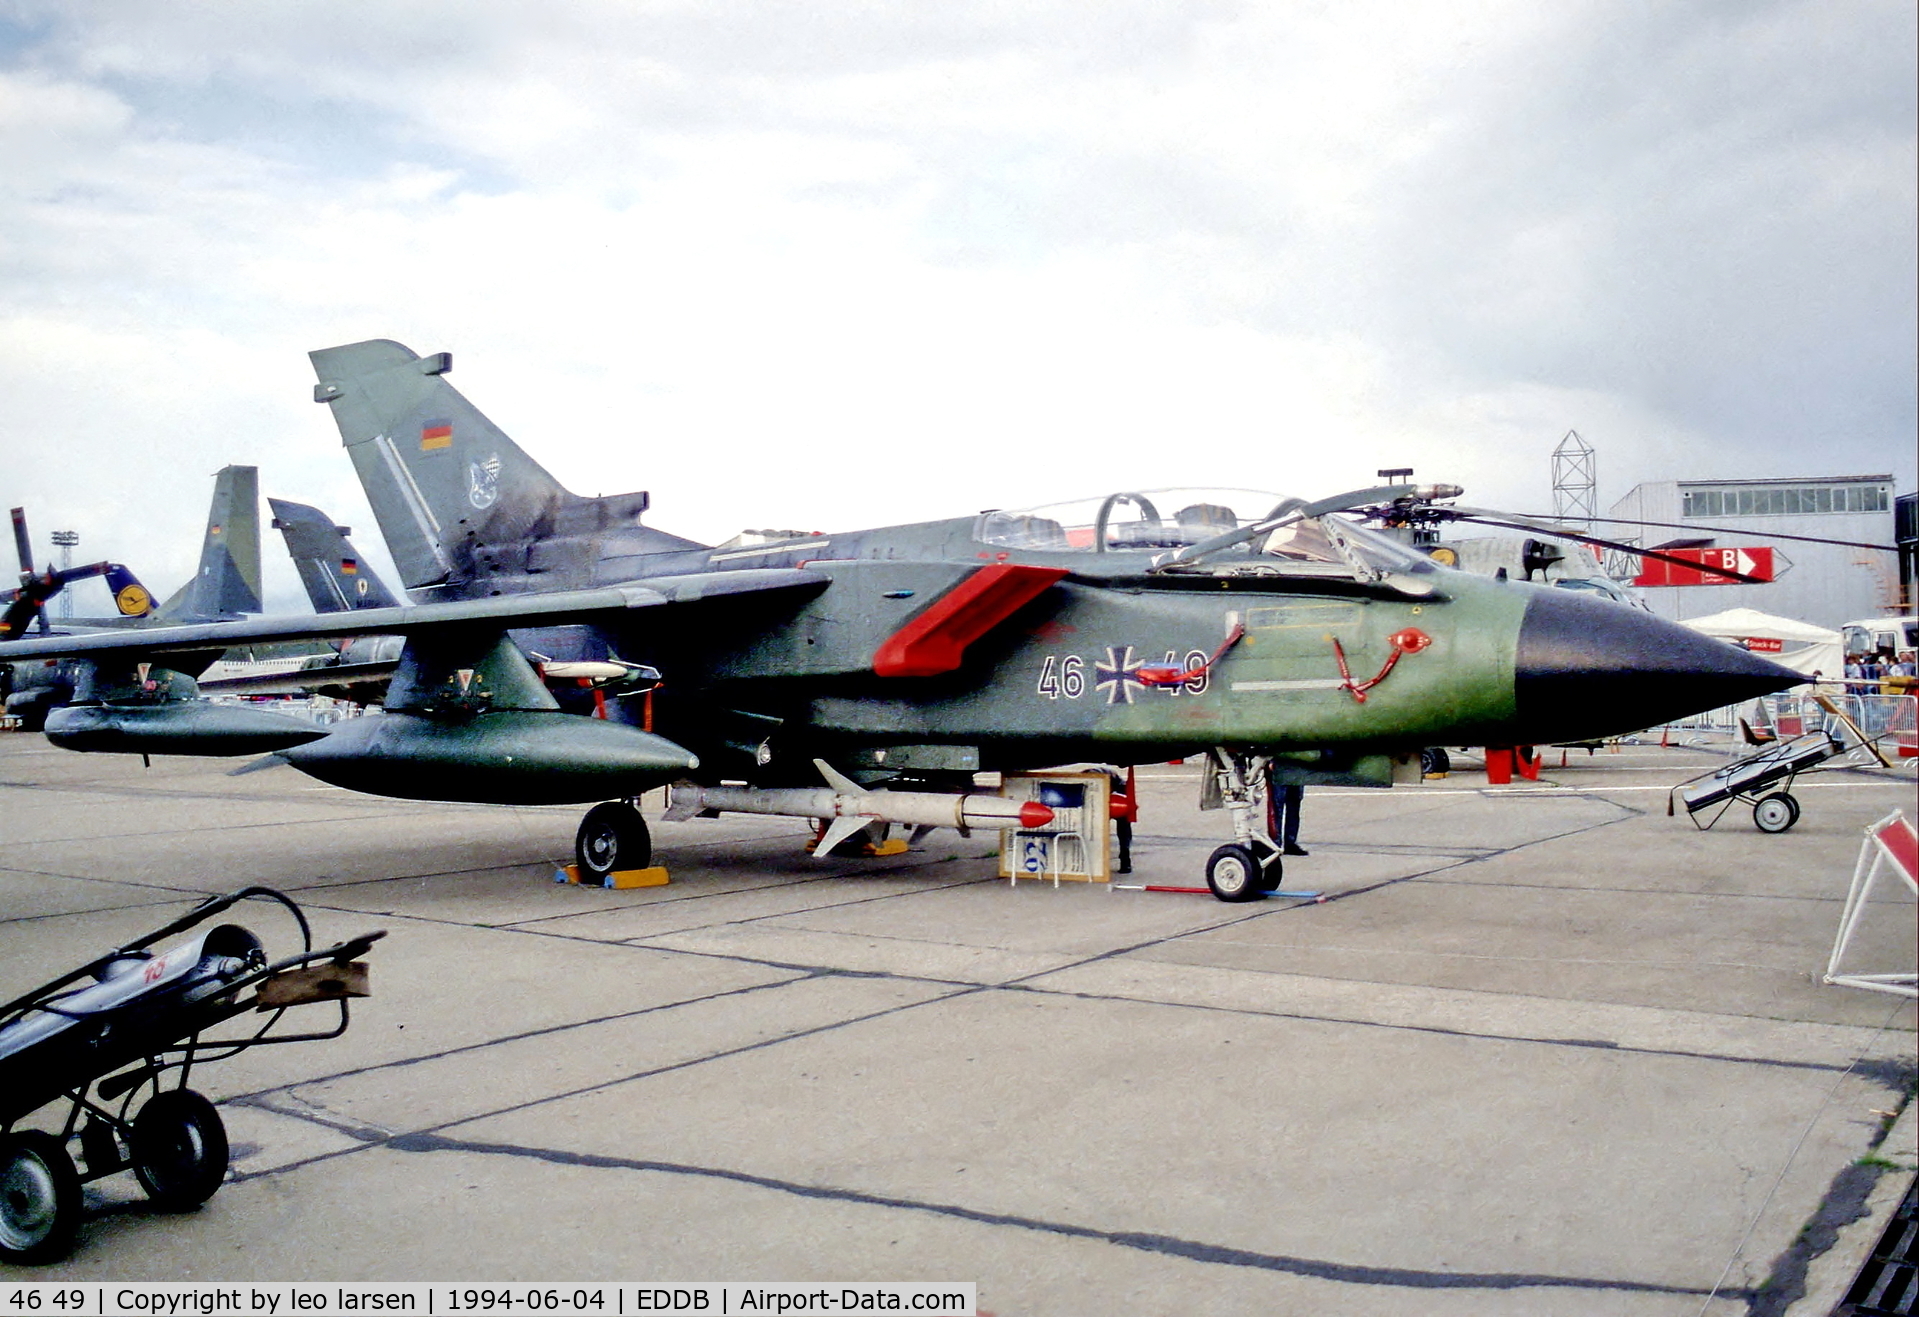 46 49, Panavia Tornado ECR C/N 884/GS282/4349, Berlin Air Show 4.6.94